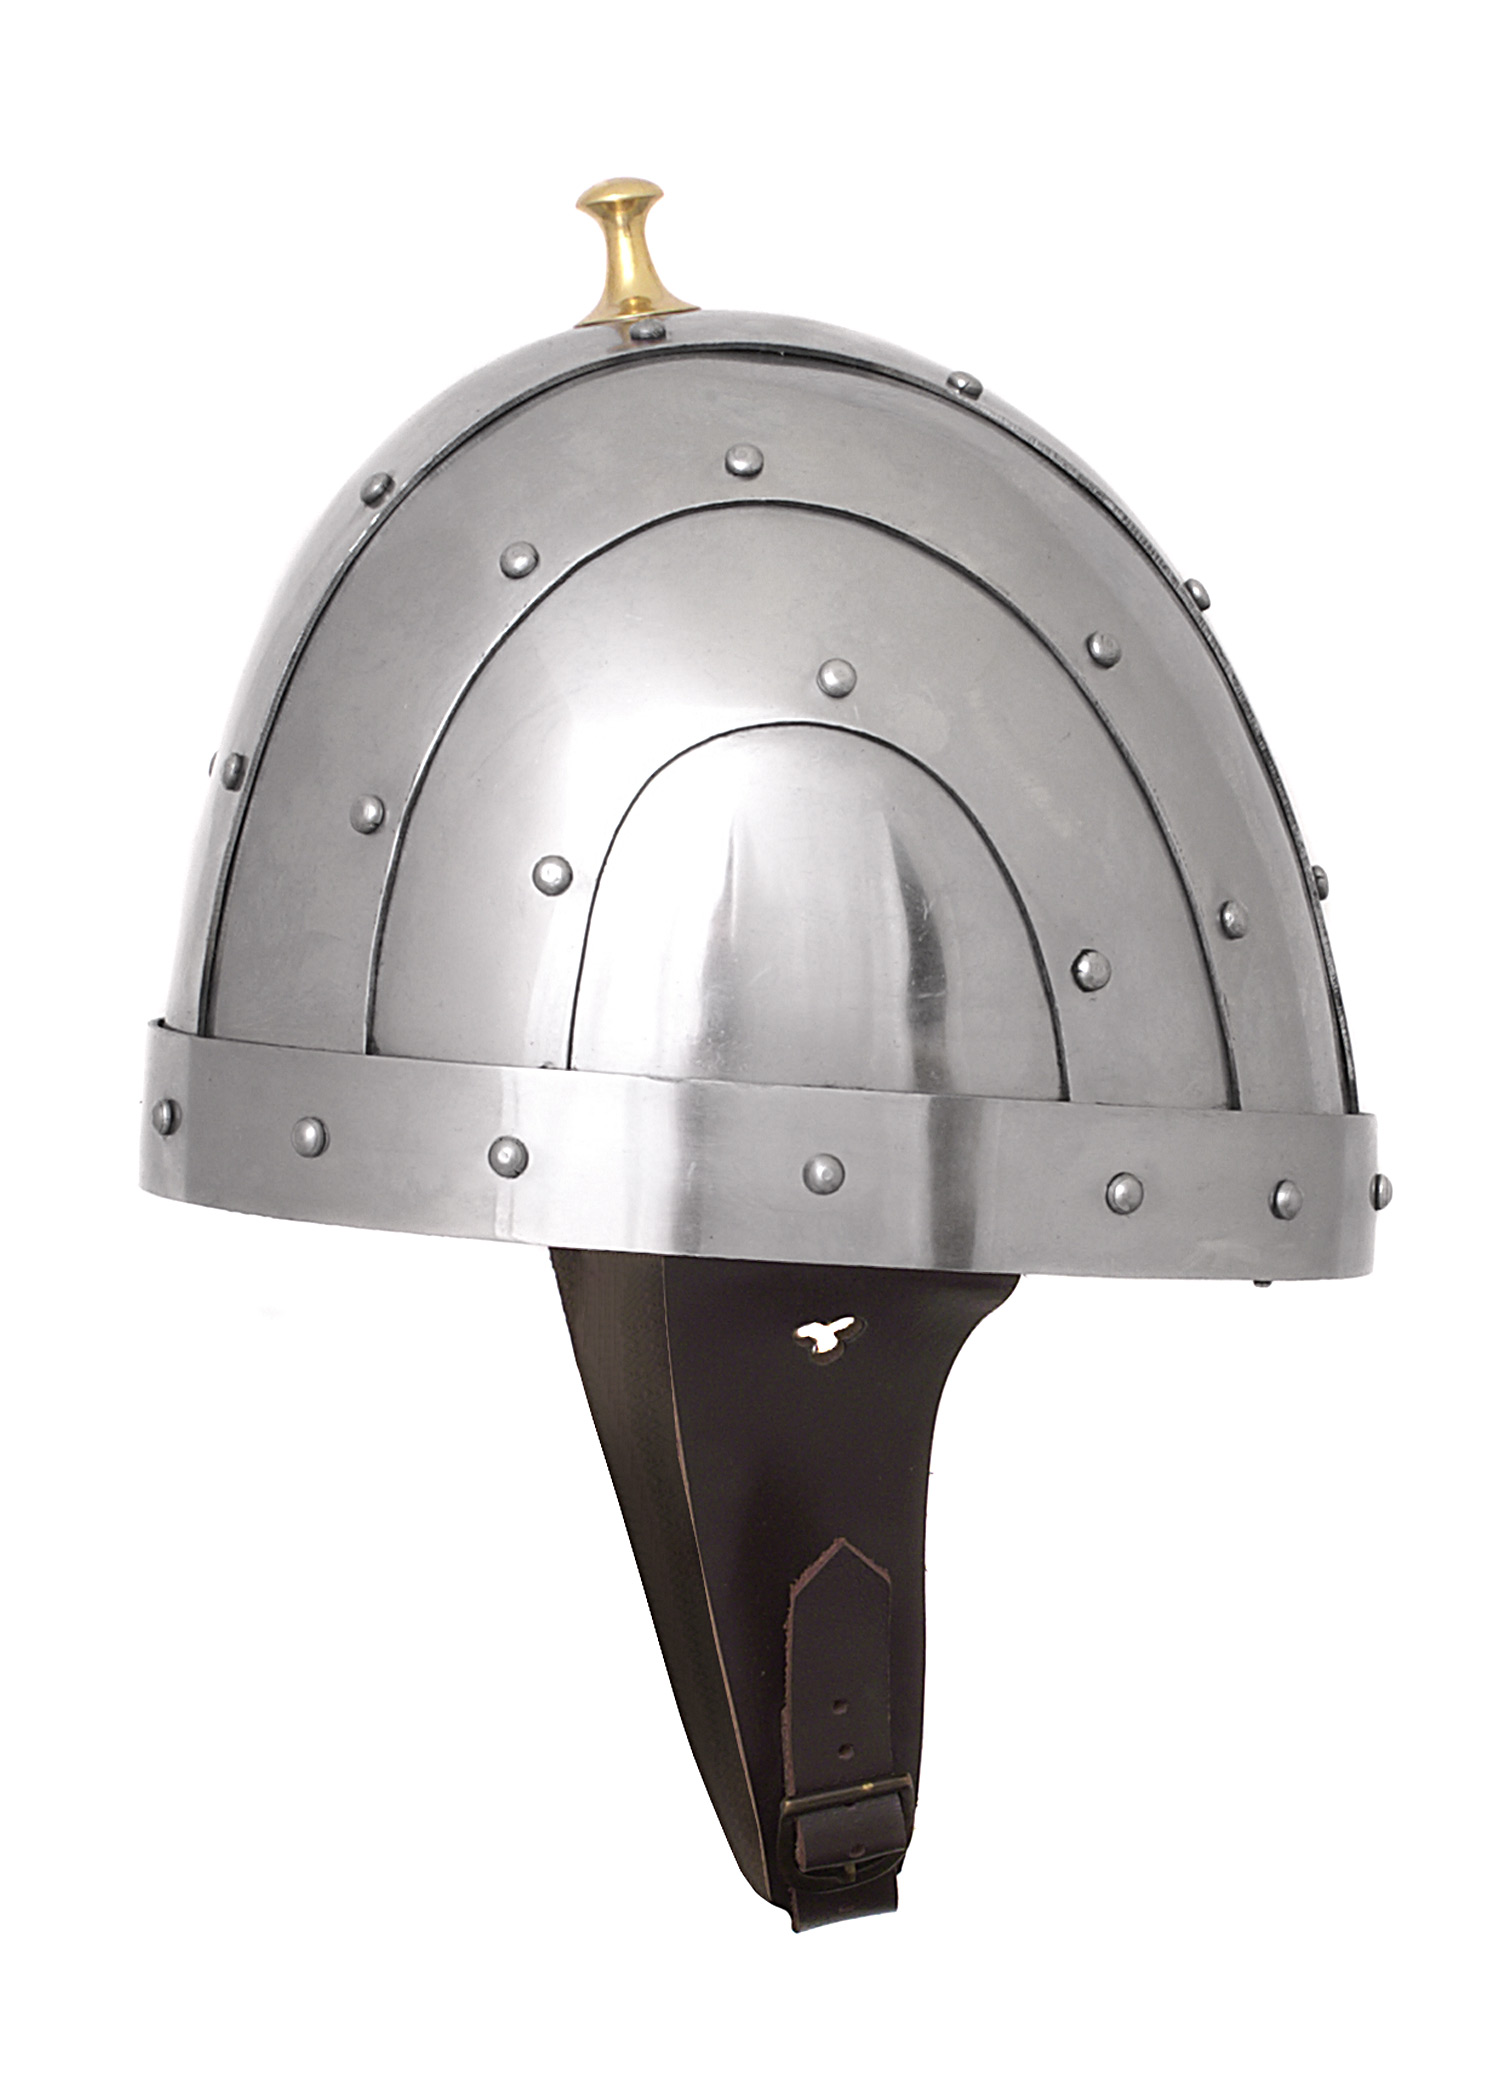 Byzantinischer Helm, 2 mm Stahl, Größe S